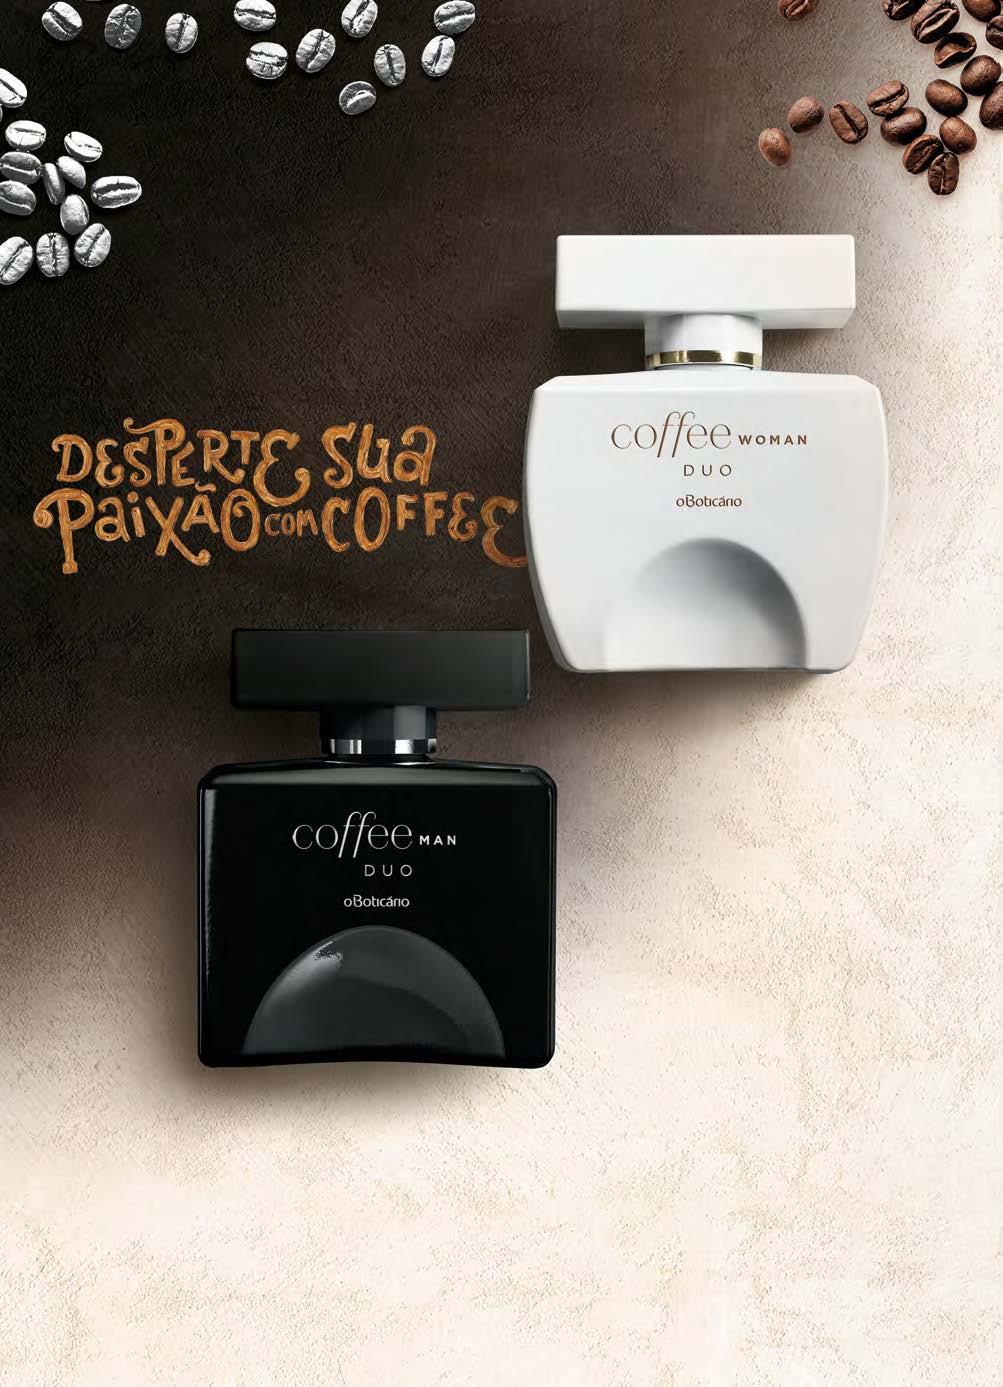 PERFUMARIA COFFEE COFFEE WOMAN DUO COLÔNIA, 100 ml 73613 R$ 129,90 R$ 99,90 economize R$ 30,00 Exclusivo Acorde Latte Macchiato, inspirado no contraste do amargor do café com a cremosidade do leite,